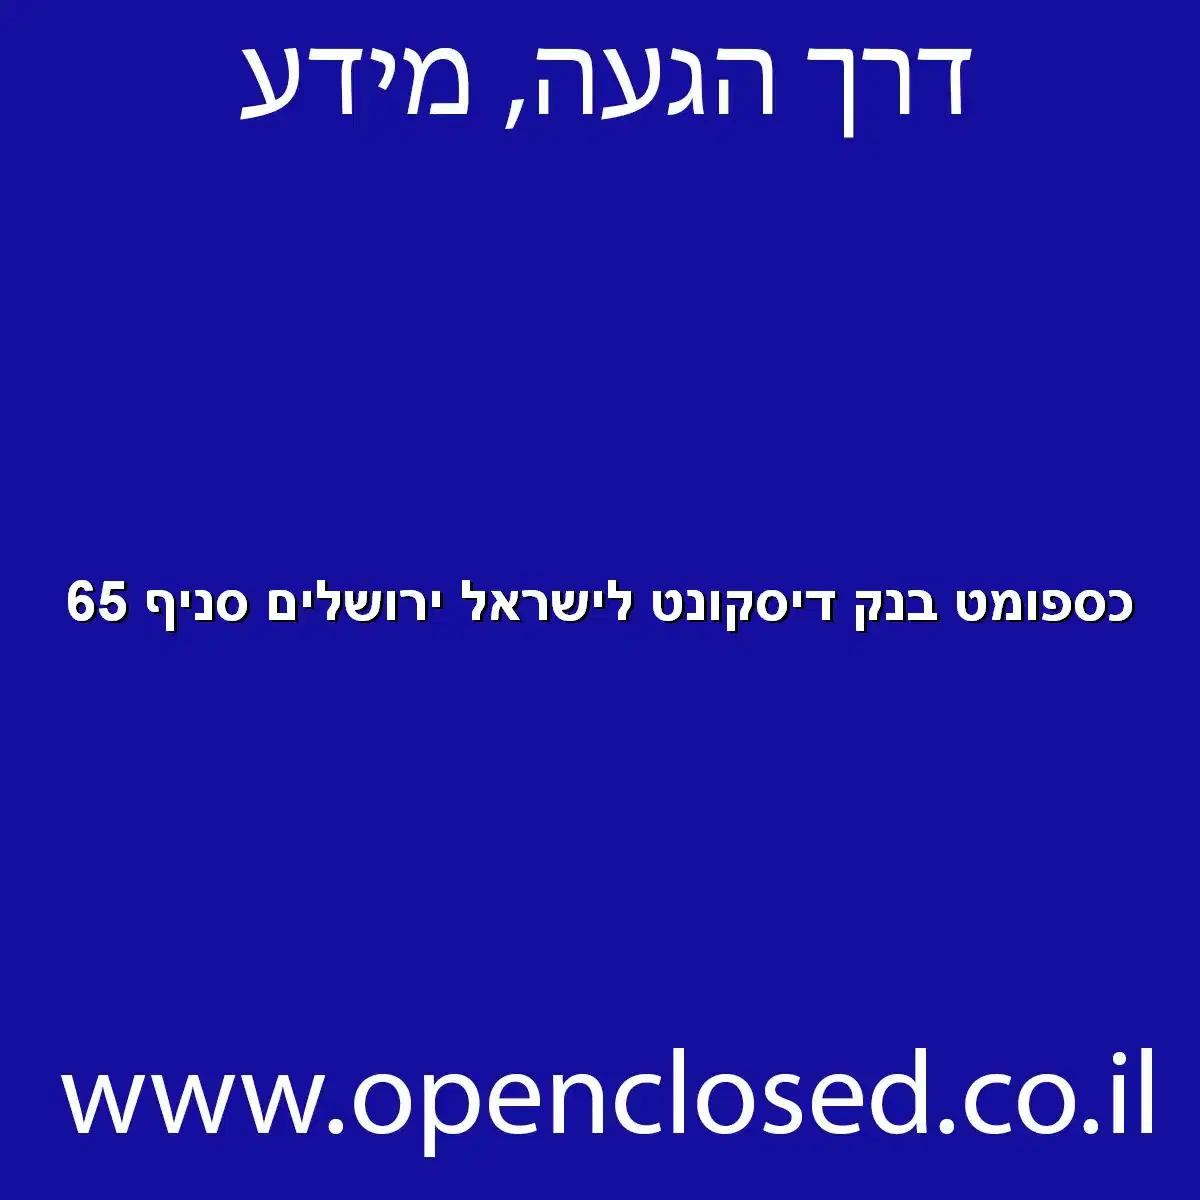 כספומט בנק דיסקונט לישראל ירושלים סניף 65